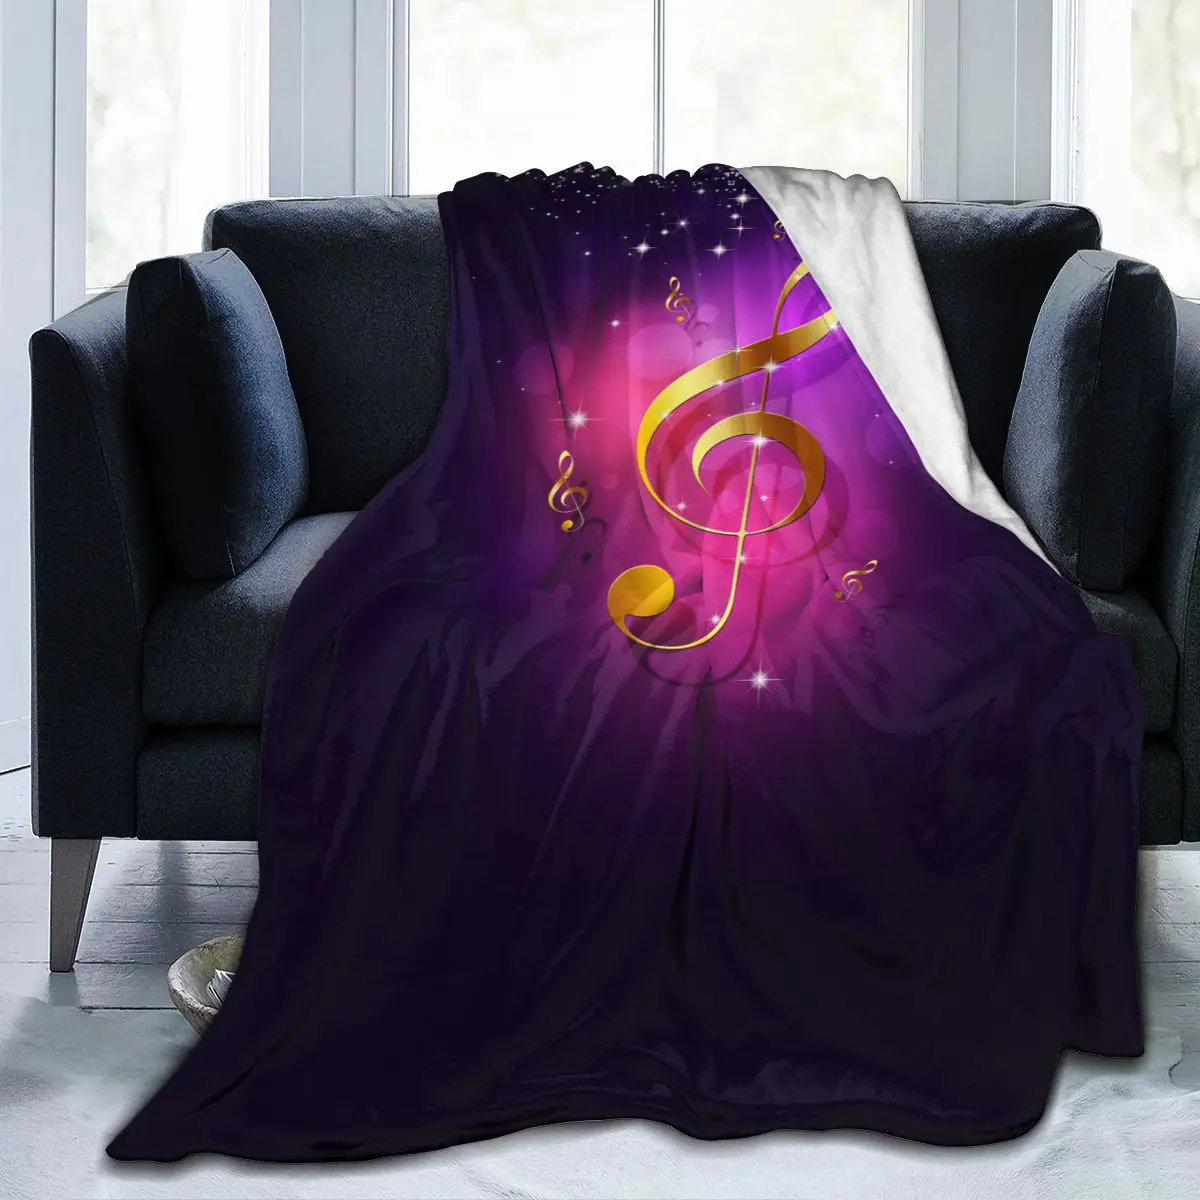 

Мягкое теплое фланелевое одеяло, золотые музыкальные ноты фиолетового цвета, портативное зимнее одеяло для путешествий, тонкое покрывало д...